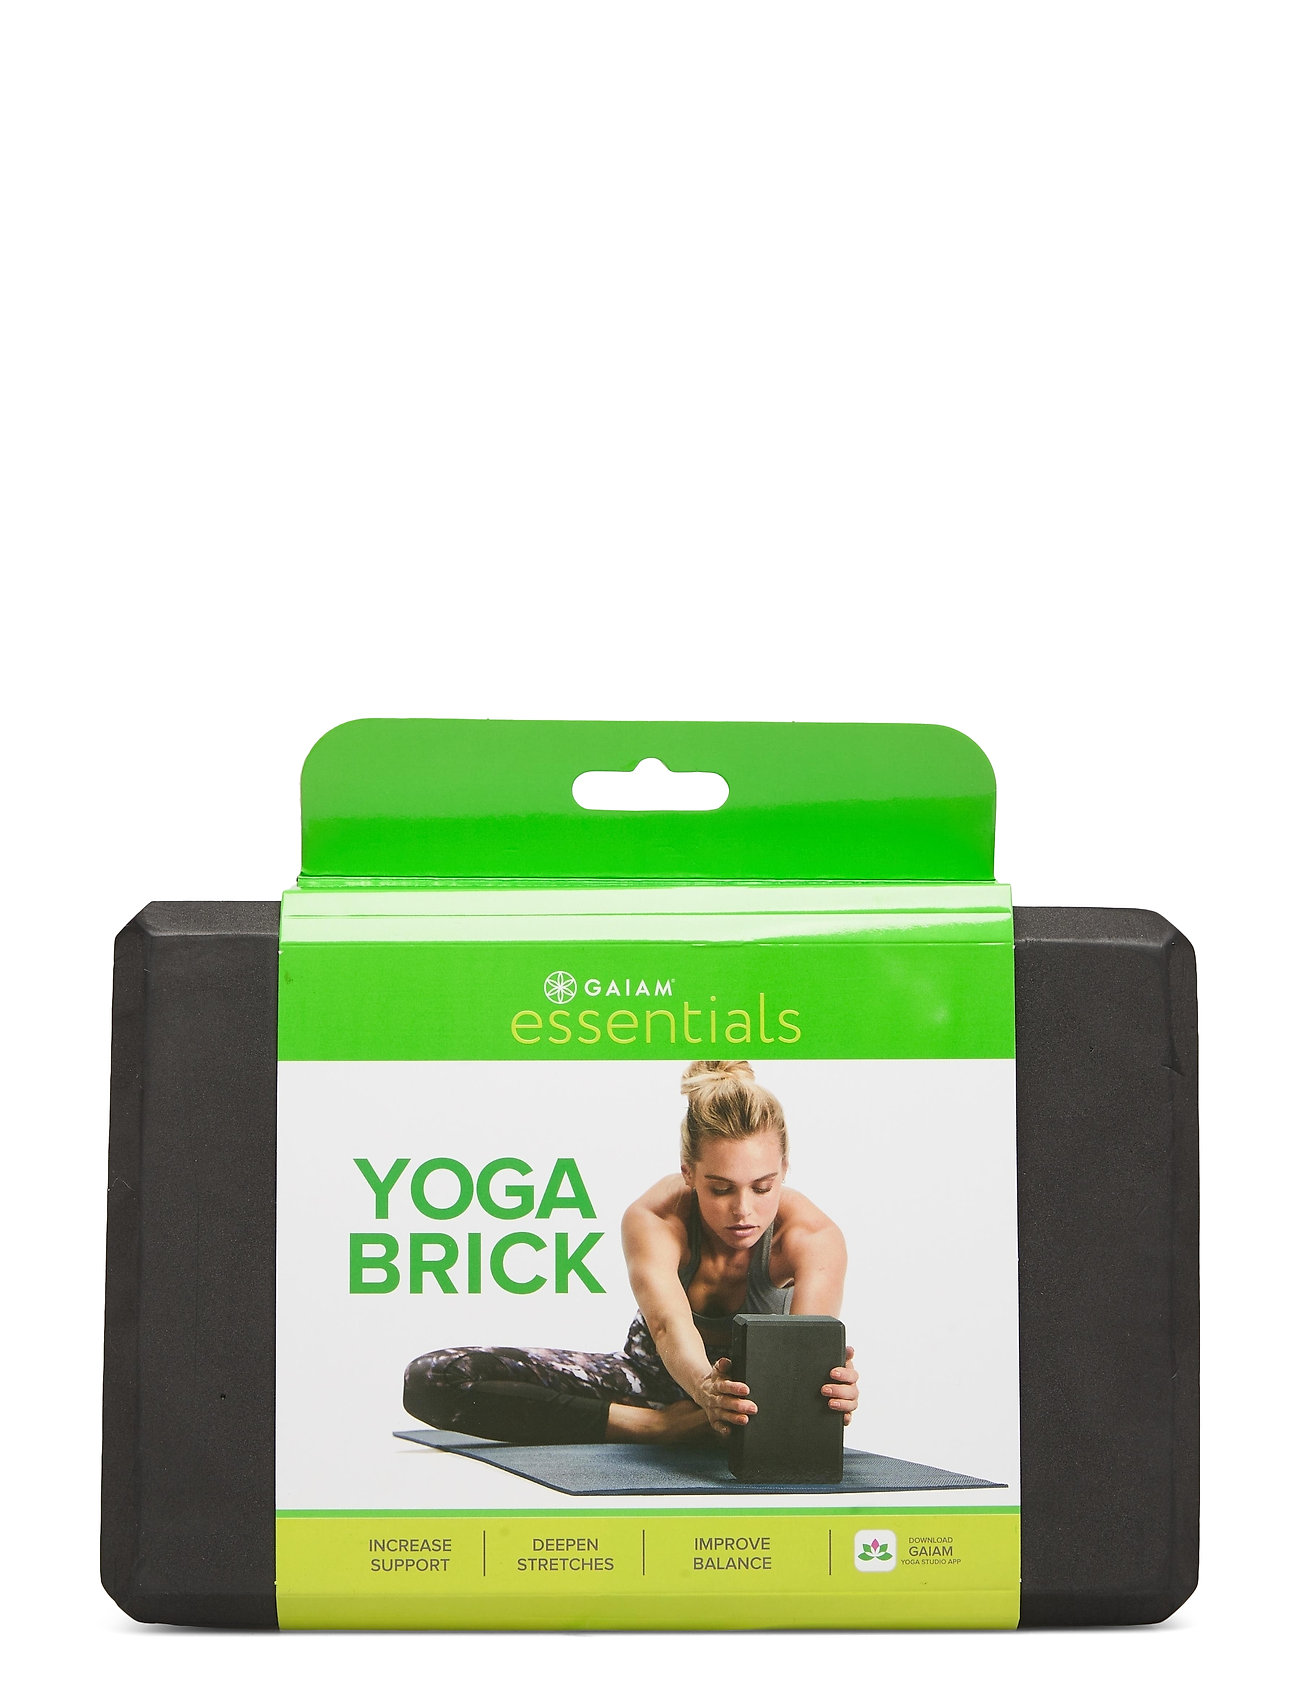 Yoga Brick Essential Black Accessories Sports Equipment Yoga Equipment Yoga Blocks And Straps Musta Gaiam